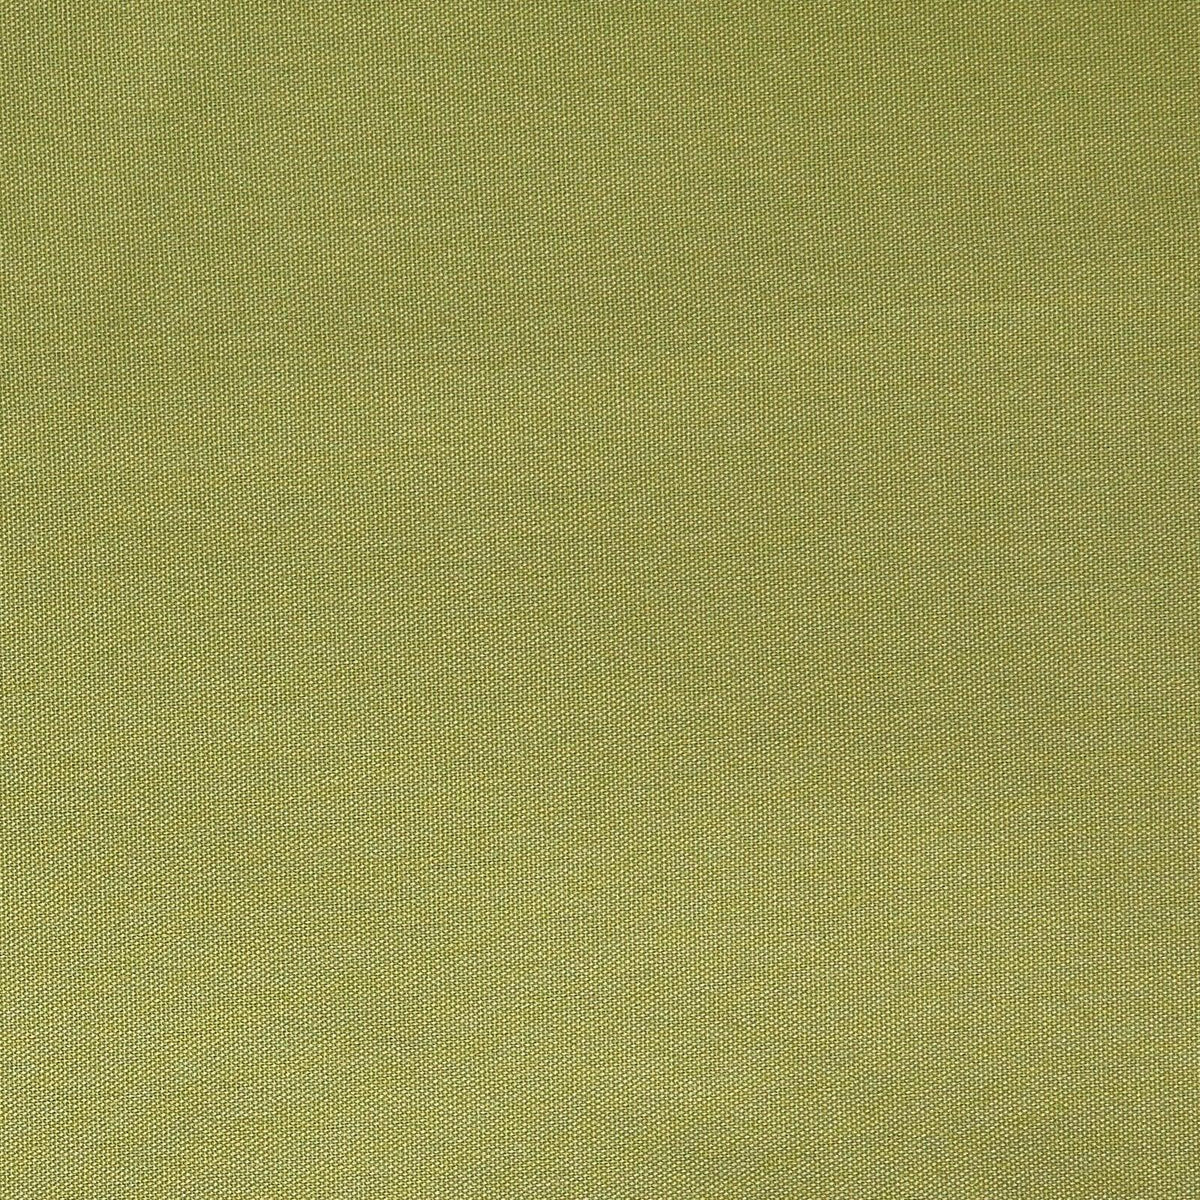 Quack Quack-Celery - Atlanta Fabrics